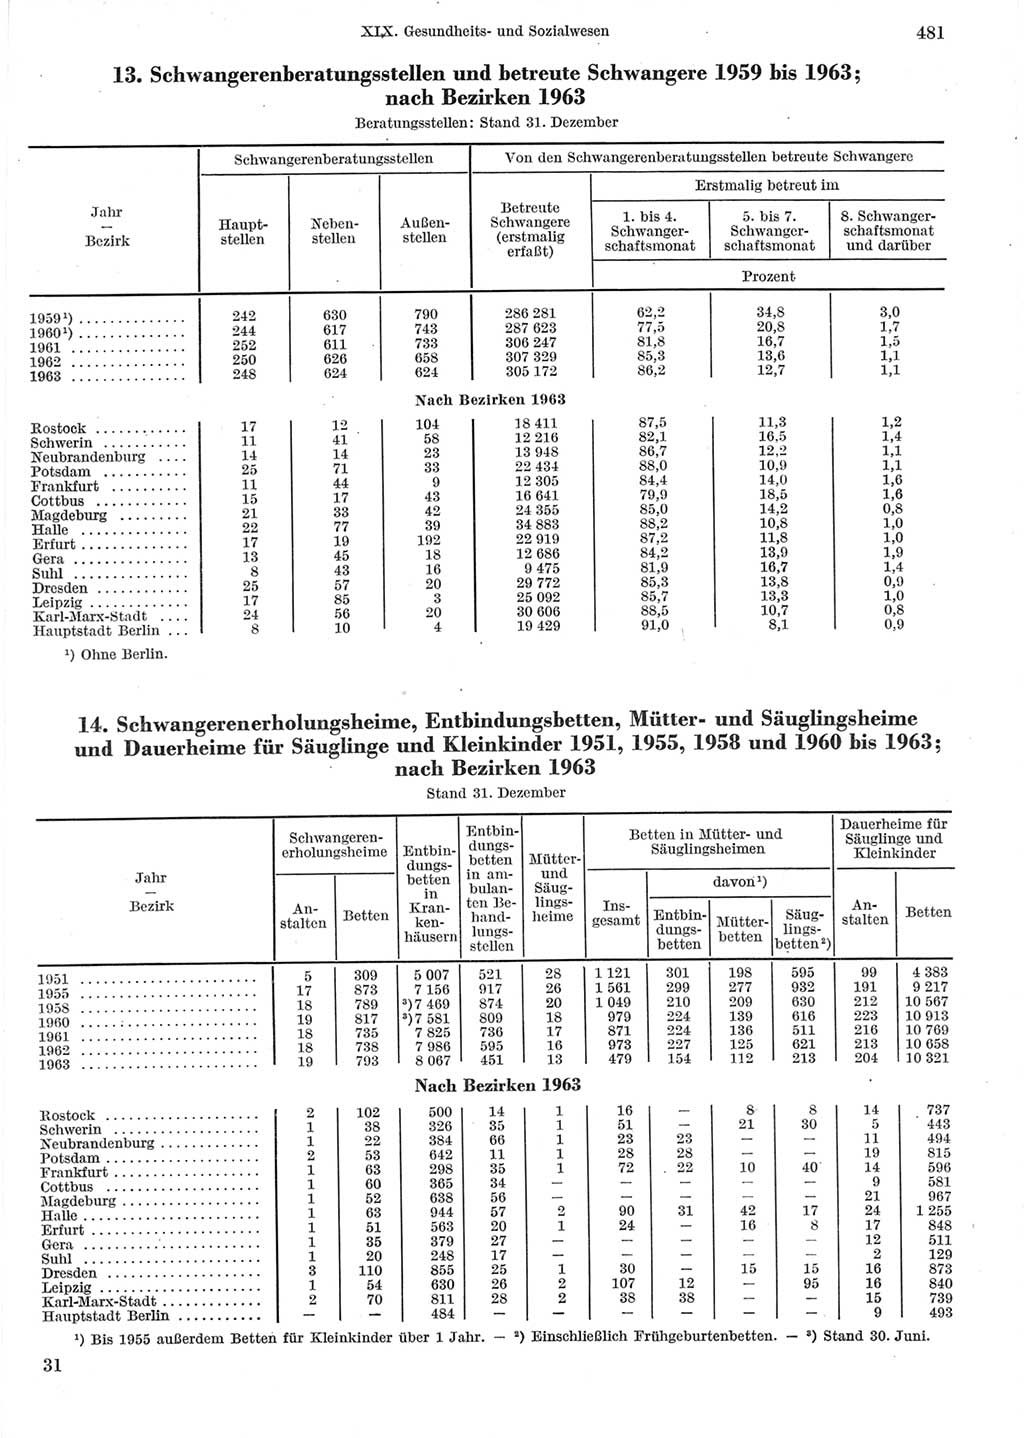 Statistisches Jahrbuch der Deutschen Demokratischen Republik (DDR) 1964, Seite 481 (Stat. Jb. DDR 1964, S. 481)